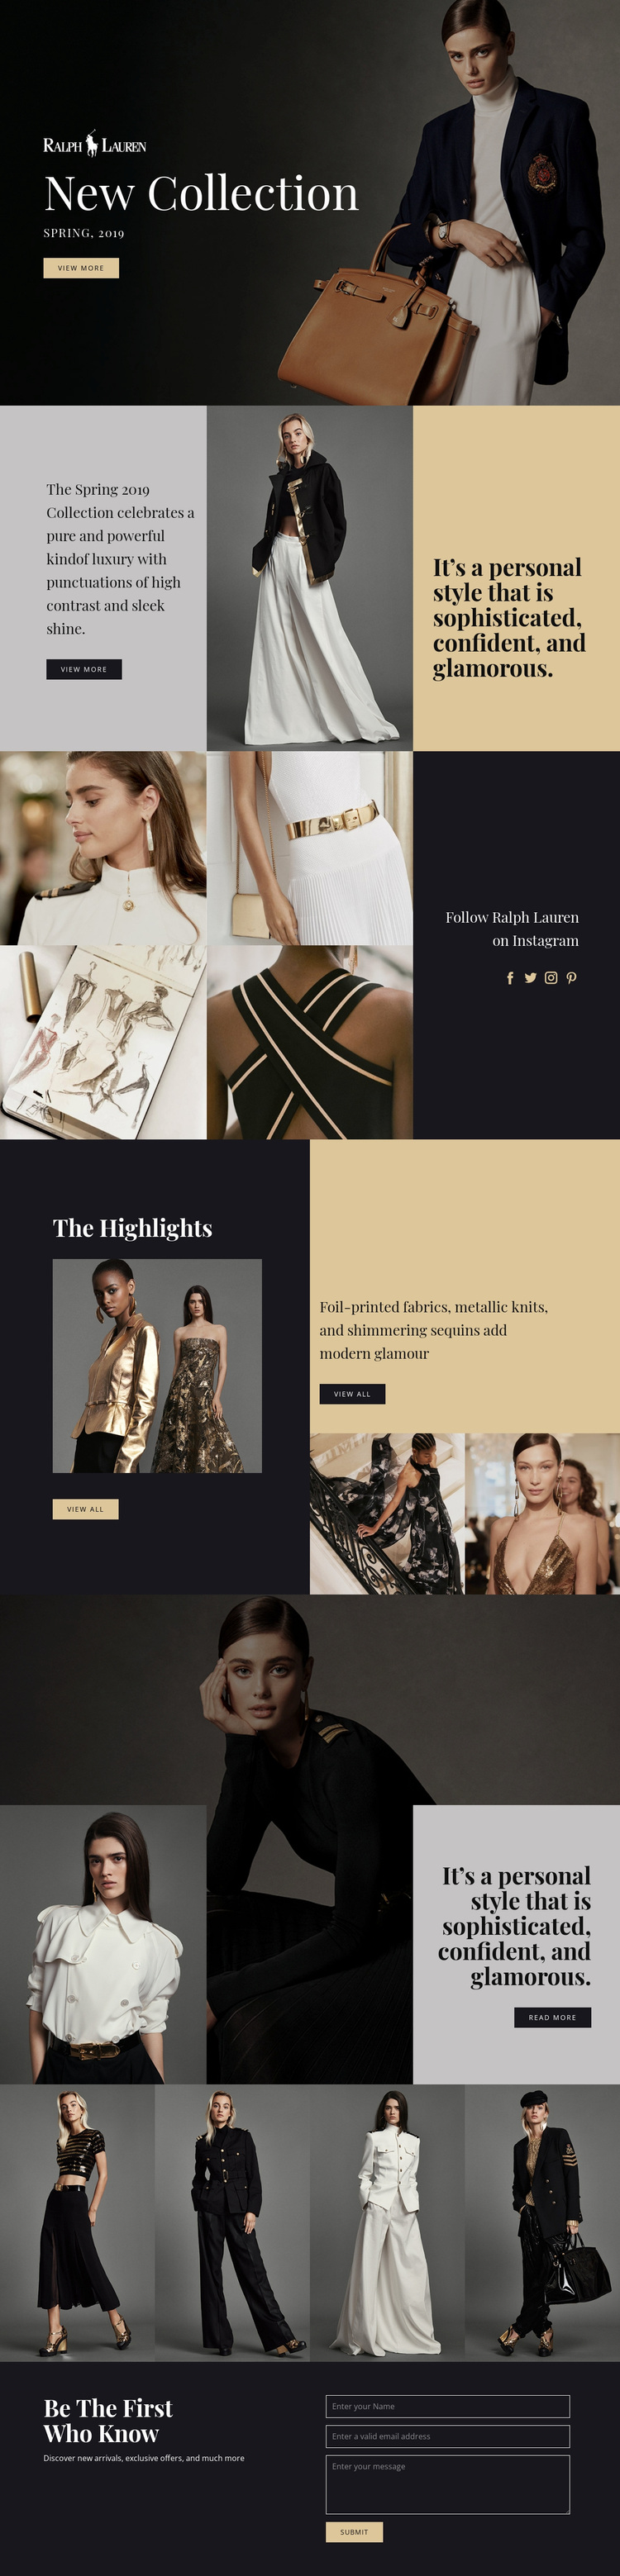 Ralph Lauren fashion Website Design